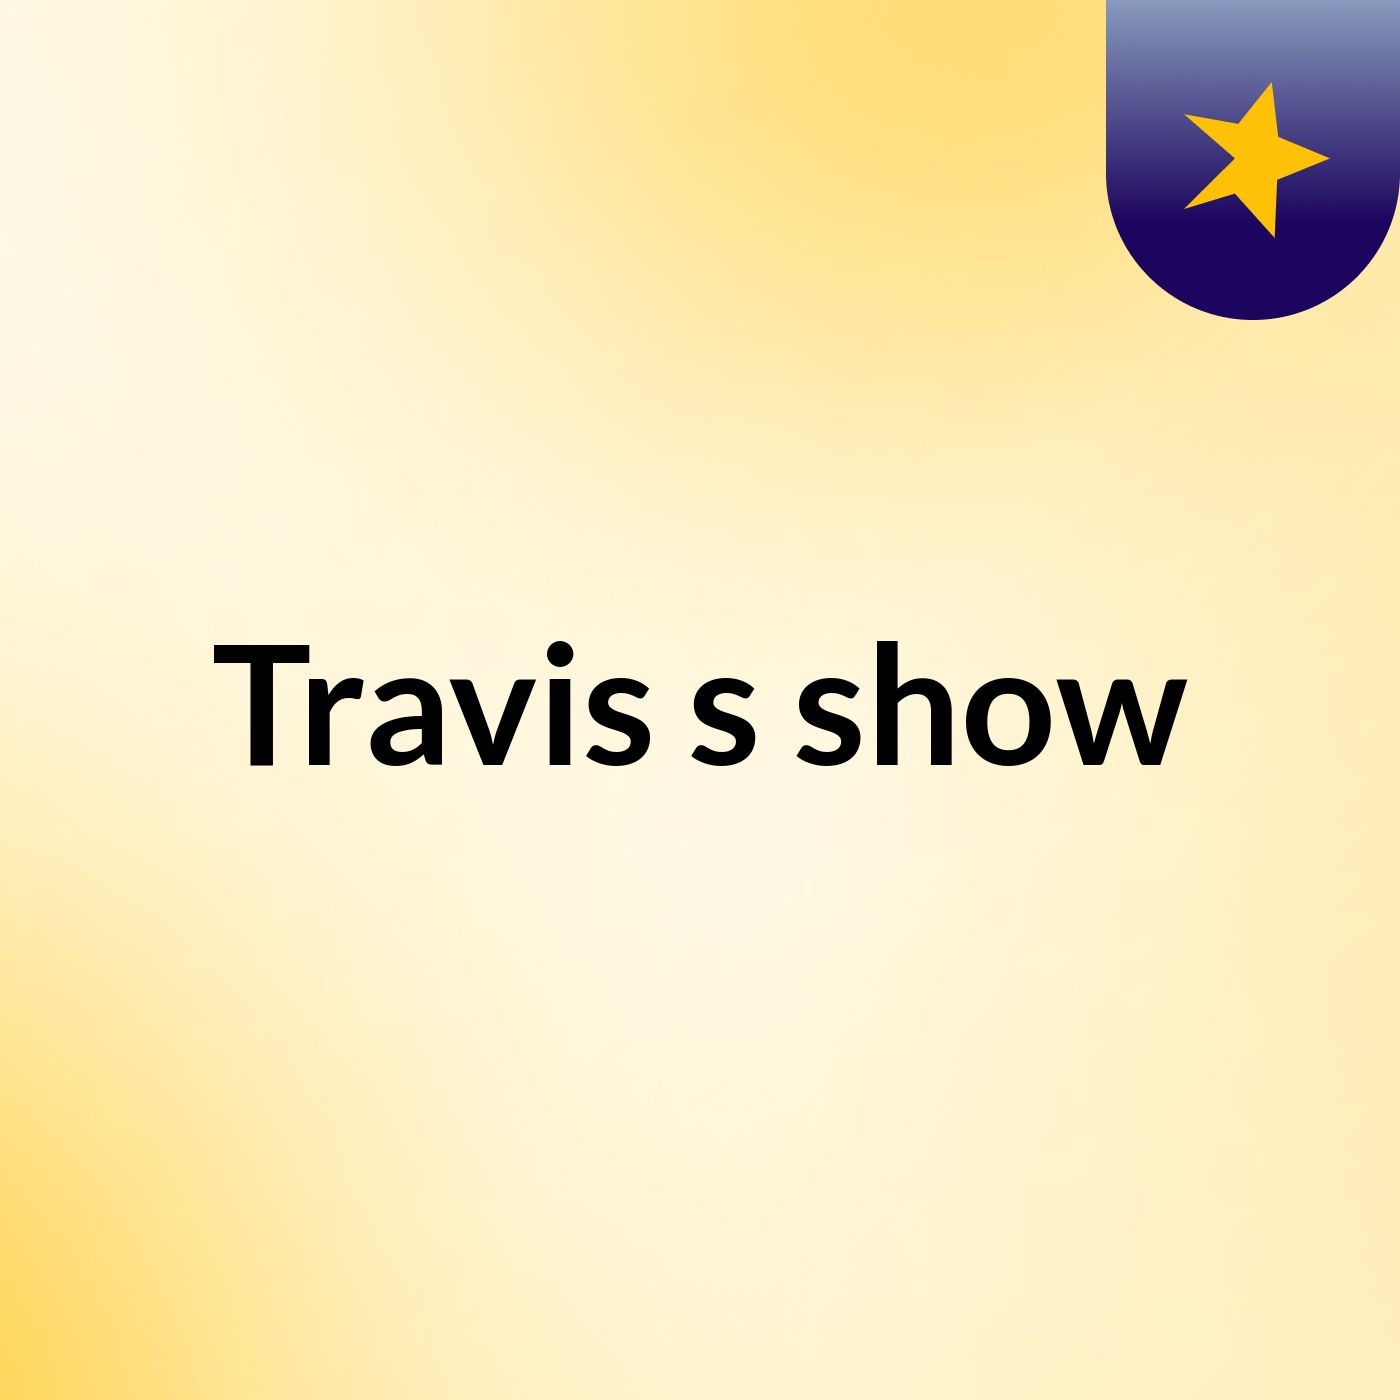 Travis's show